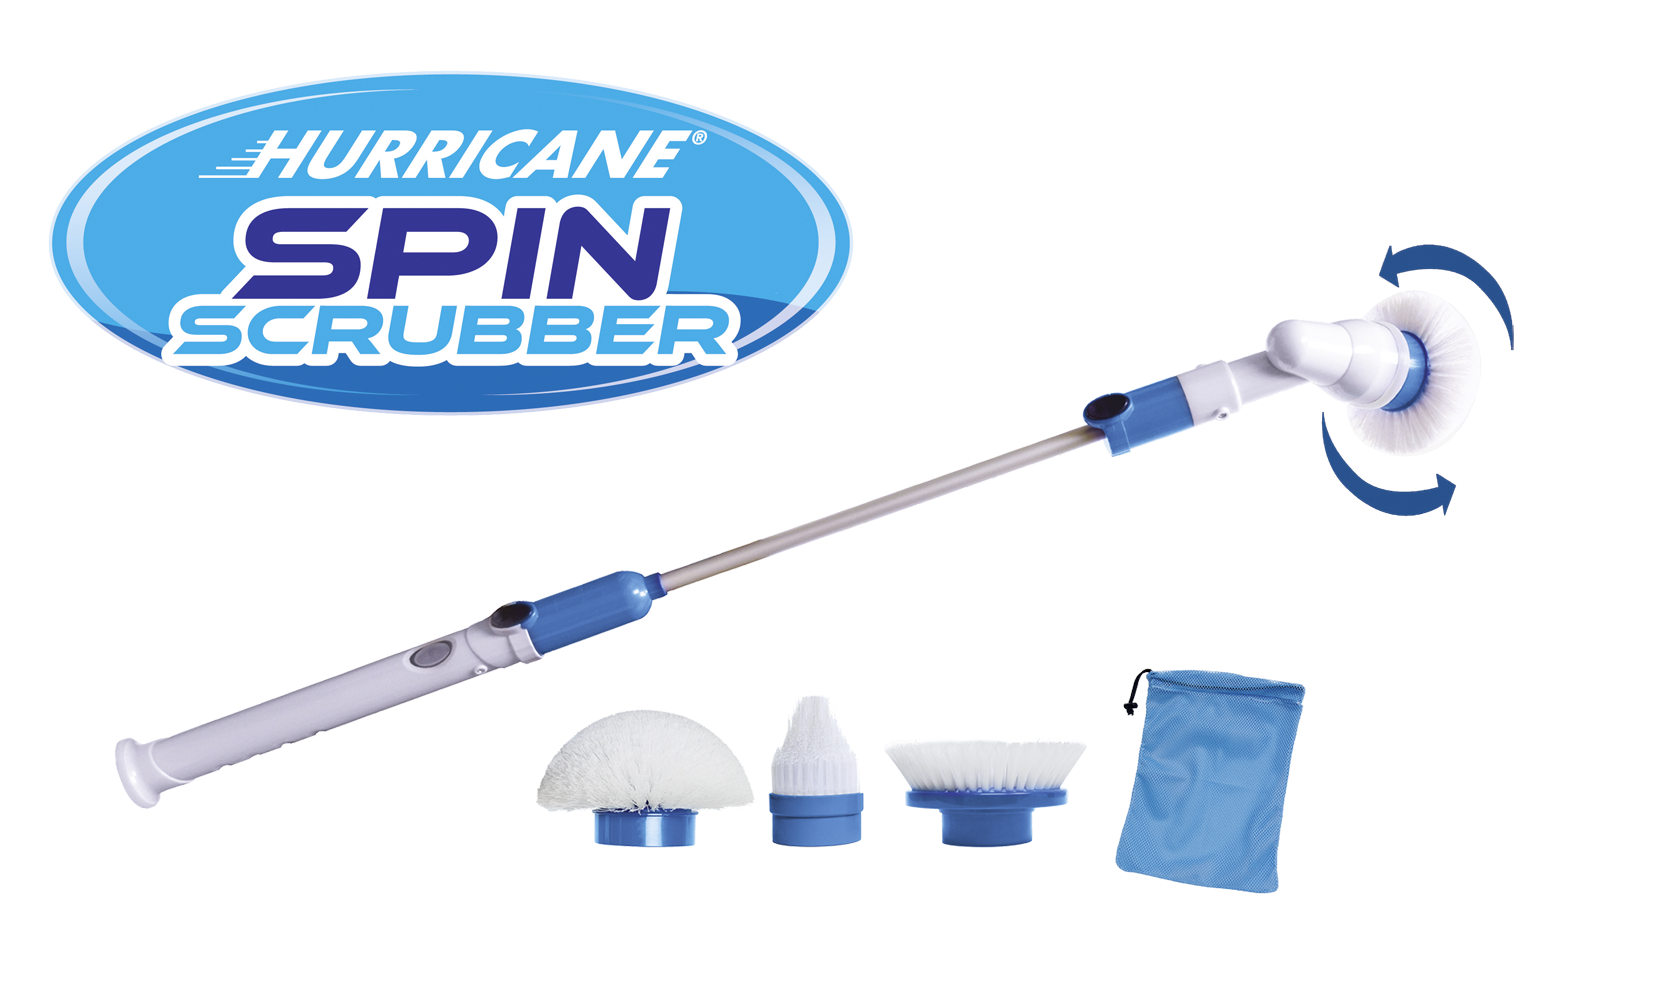 Hurricane Spin Scrubber - La spazzola rotante senza fili per una